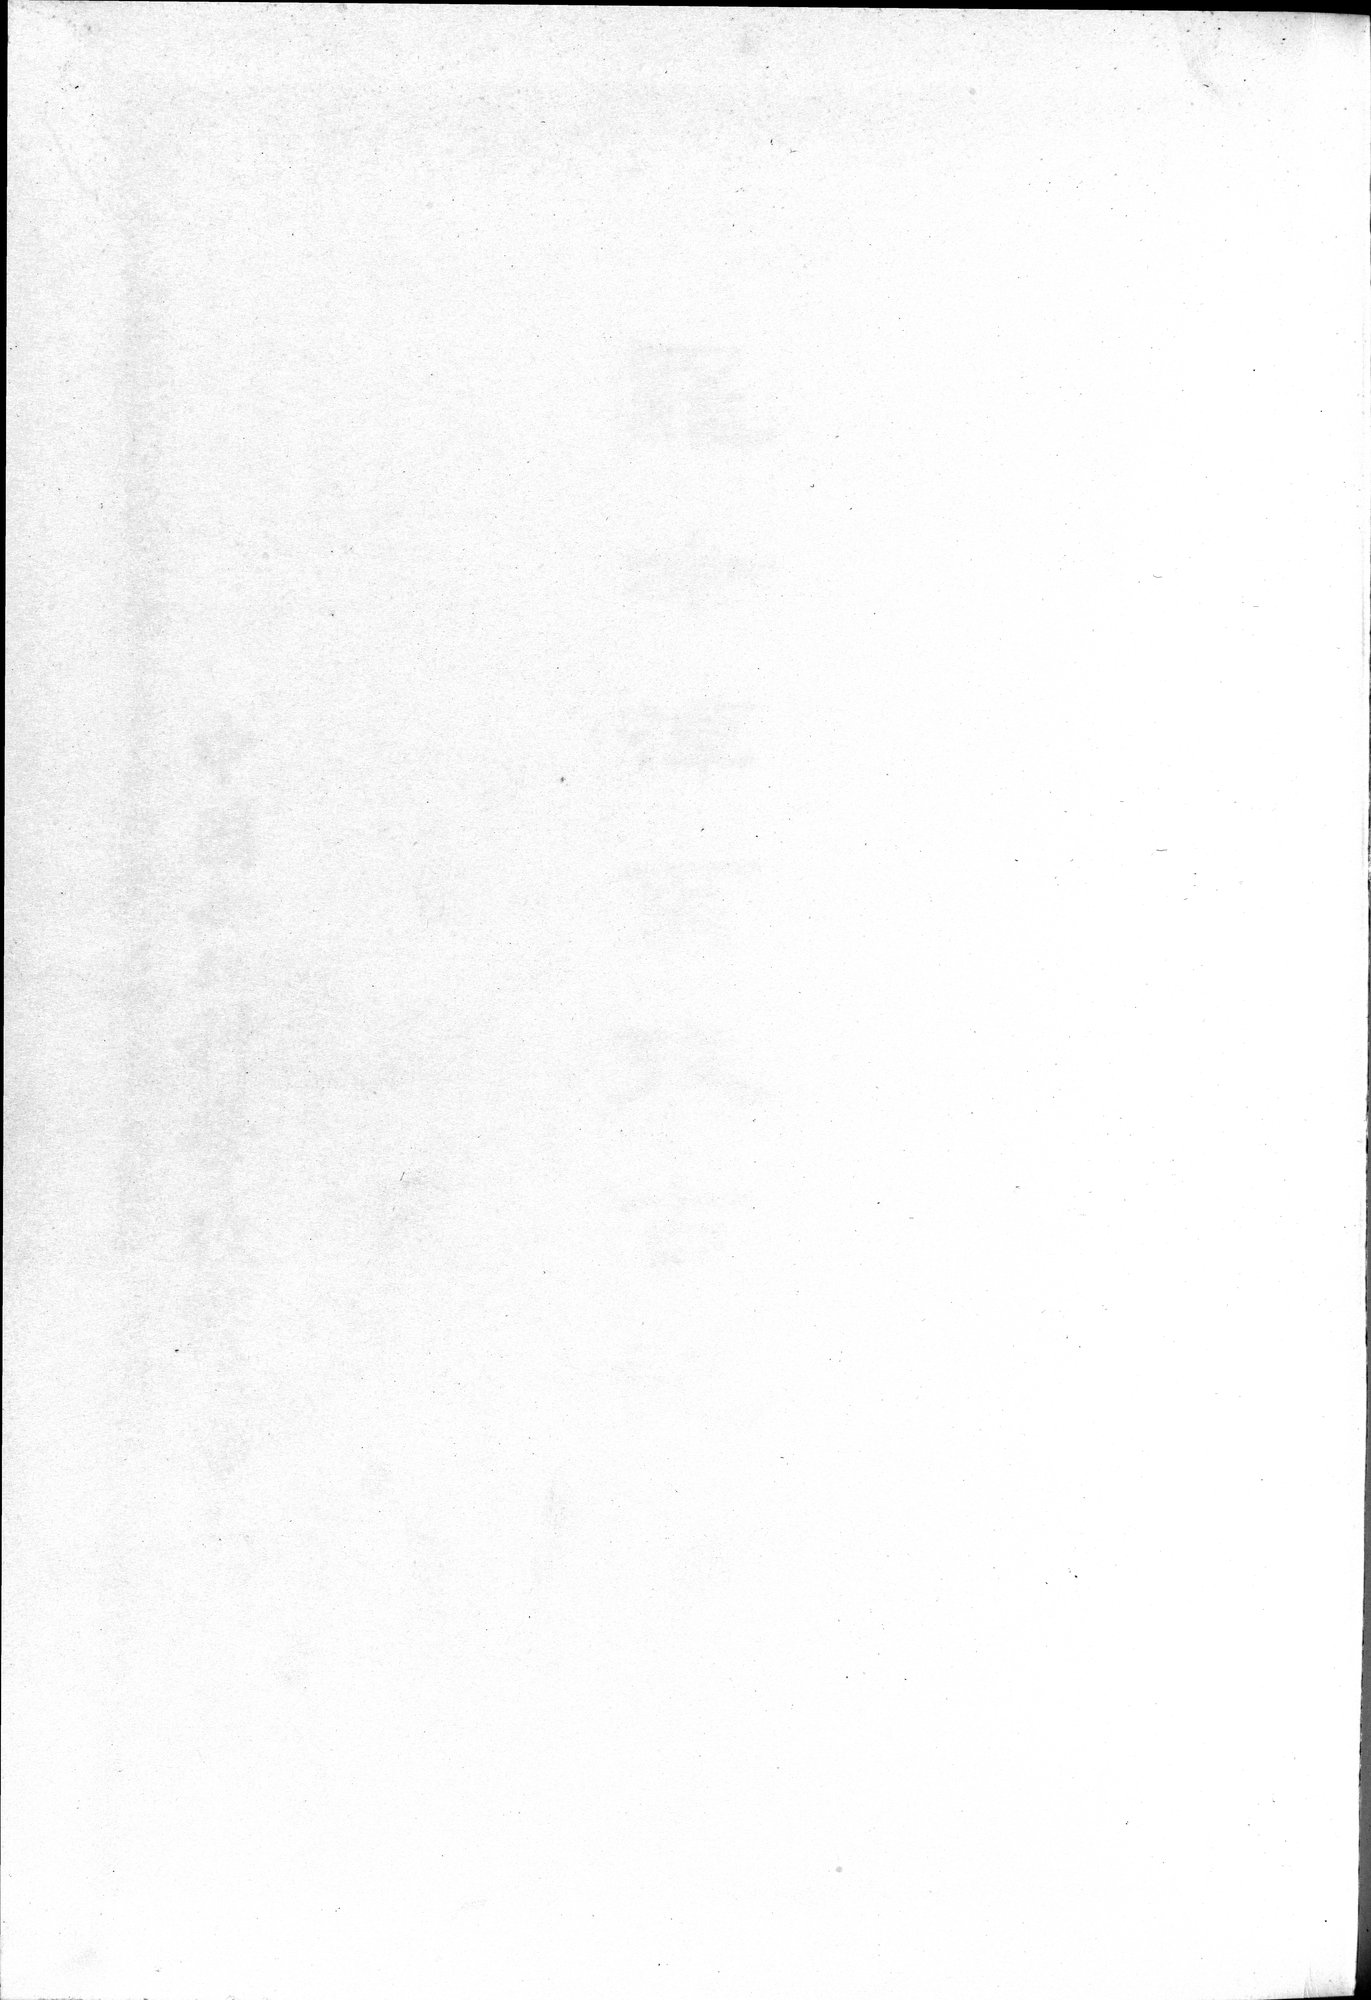 羅布淖爾考古記 : vol.1 / Page 3 (Grayscale High Resolution Image)